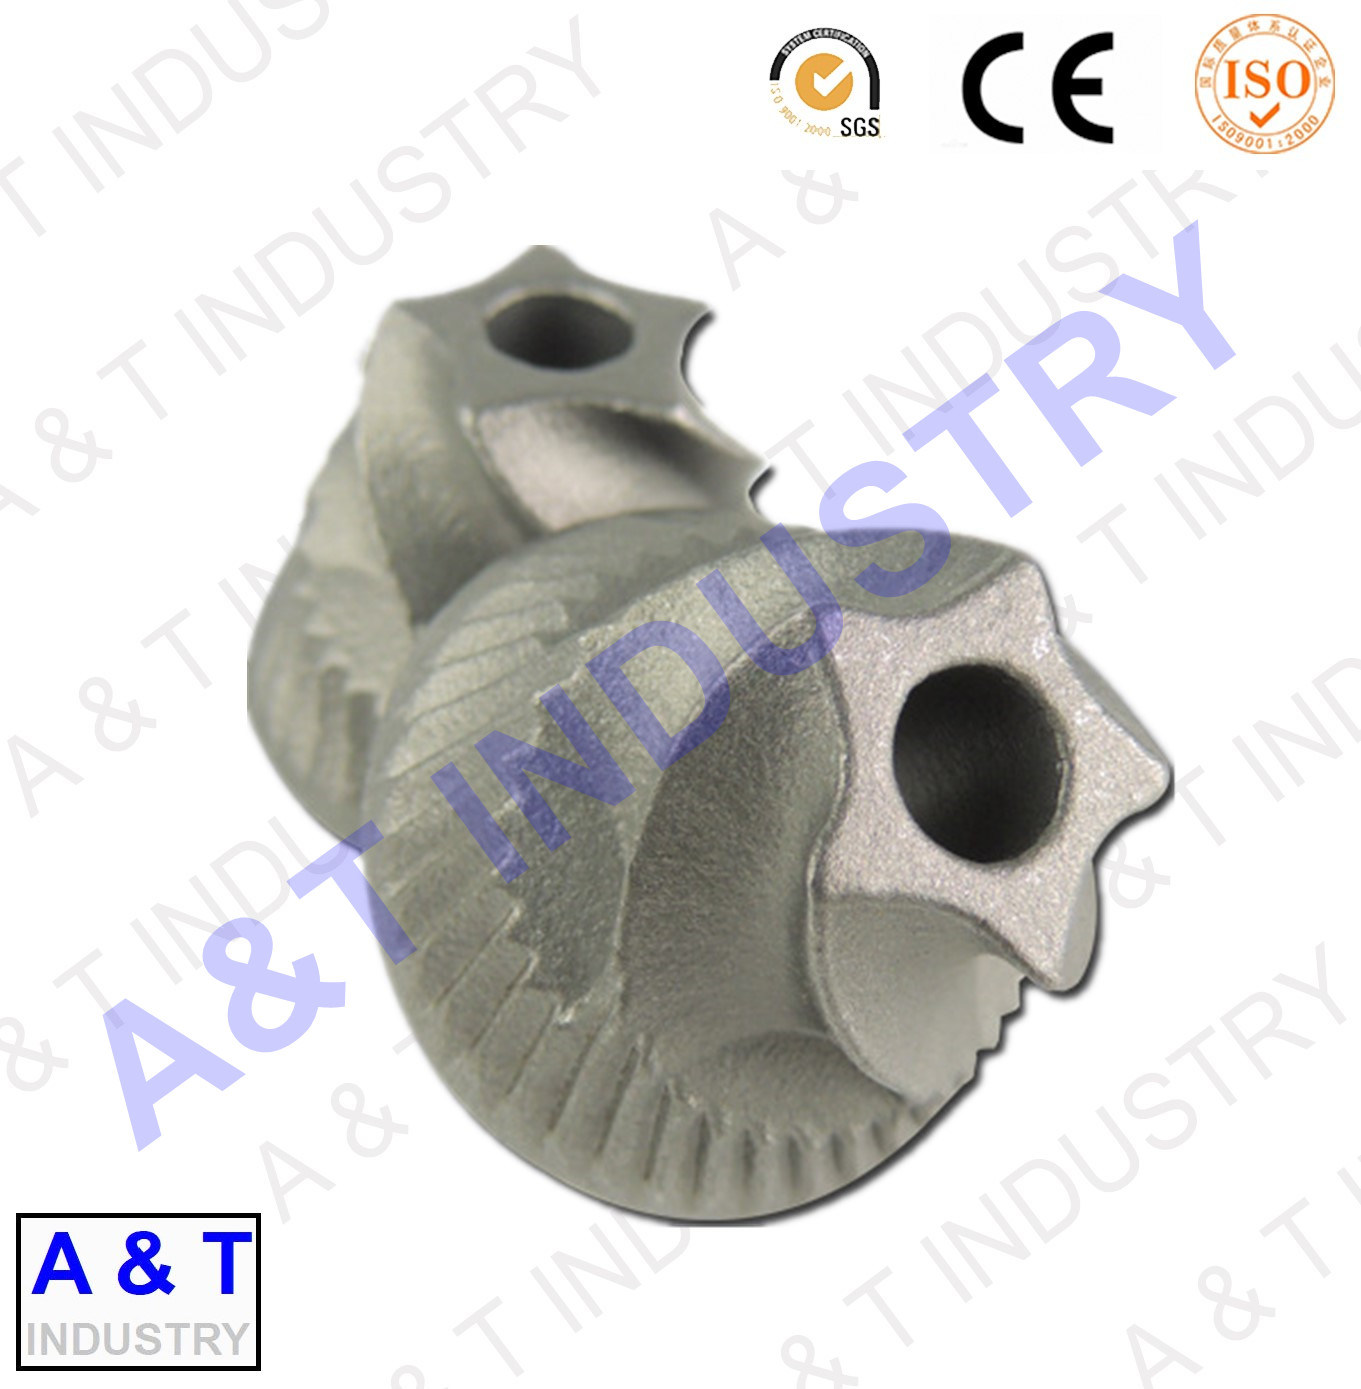 China OEM Machinery Equipment Aluminium Alloy Ingot Die Casting